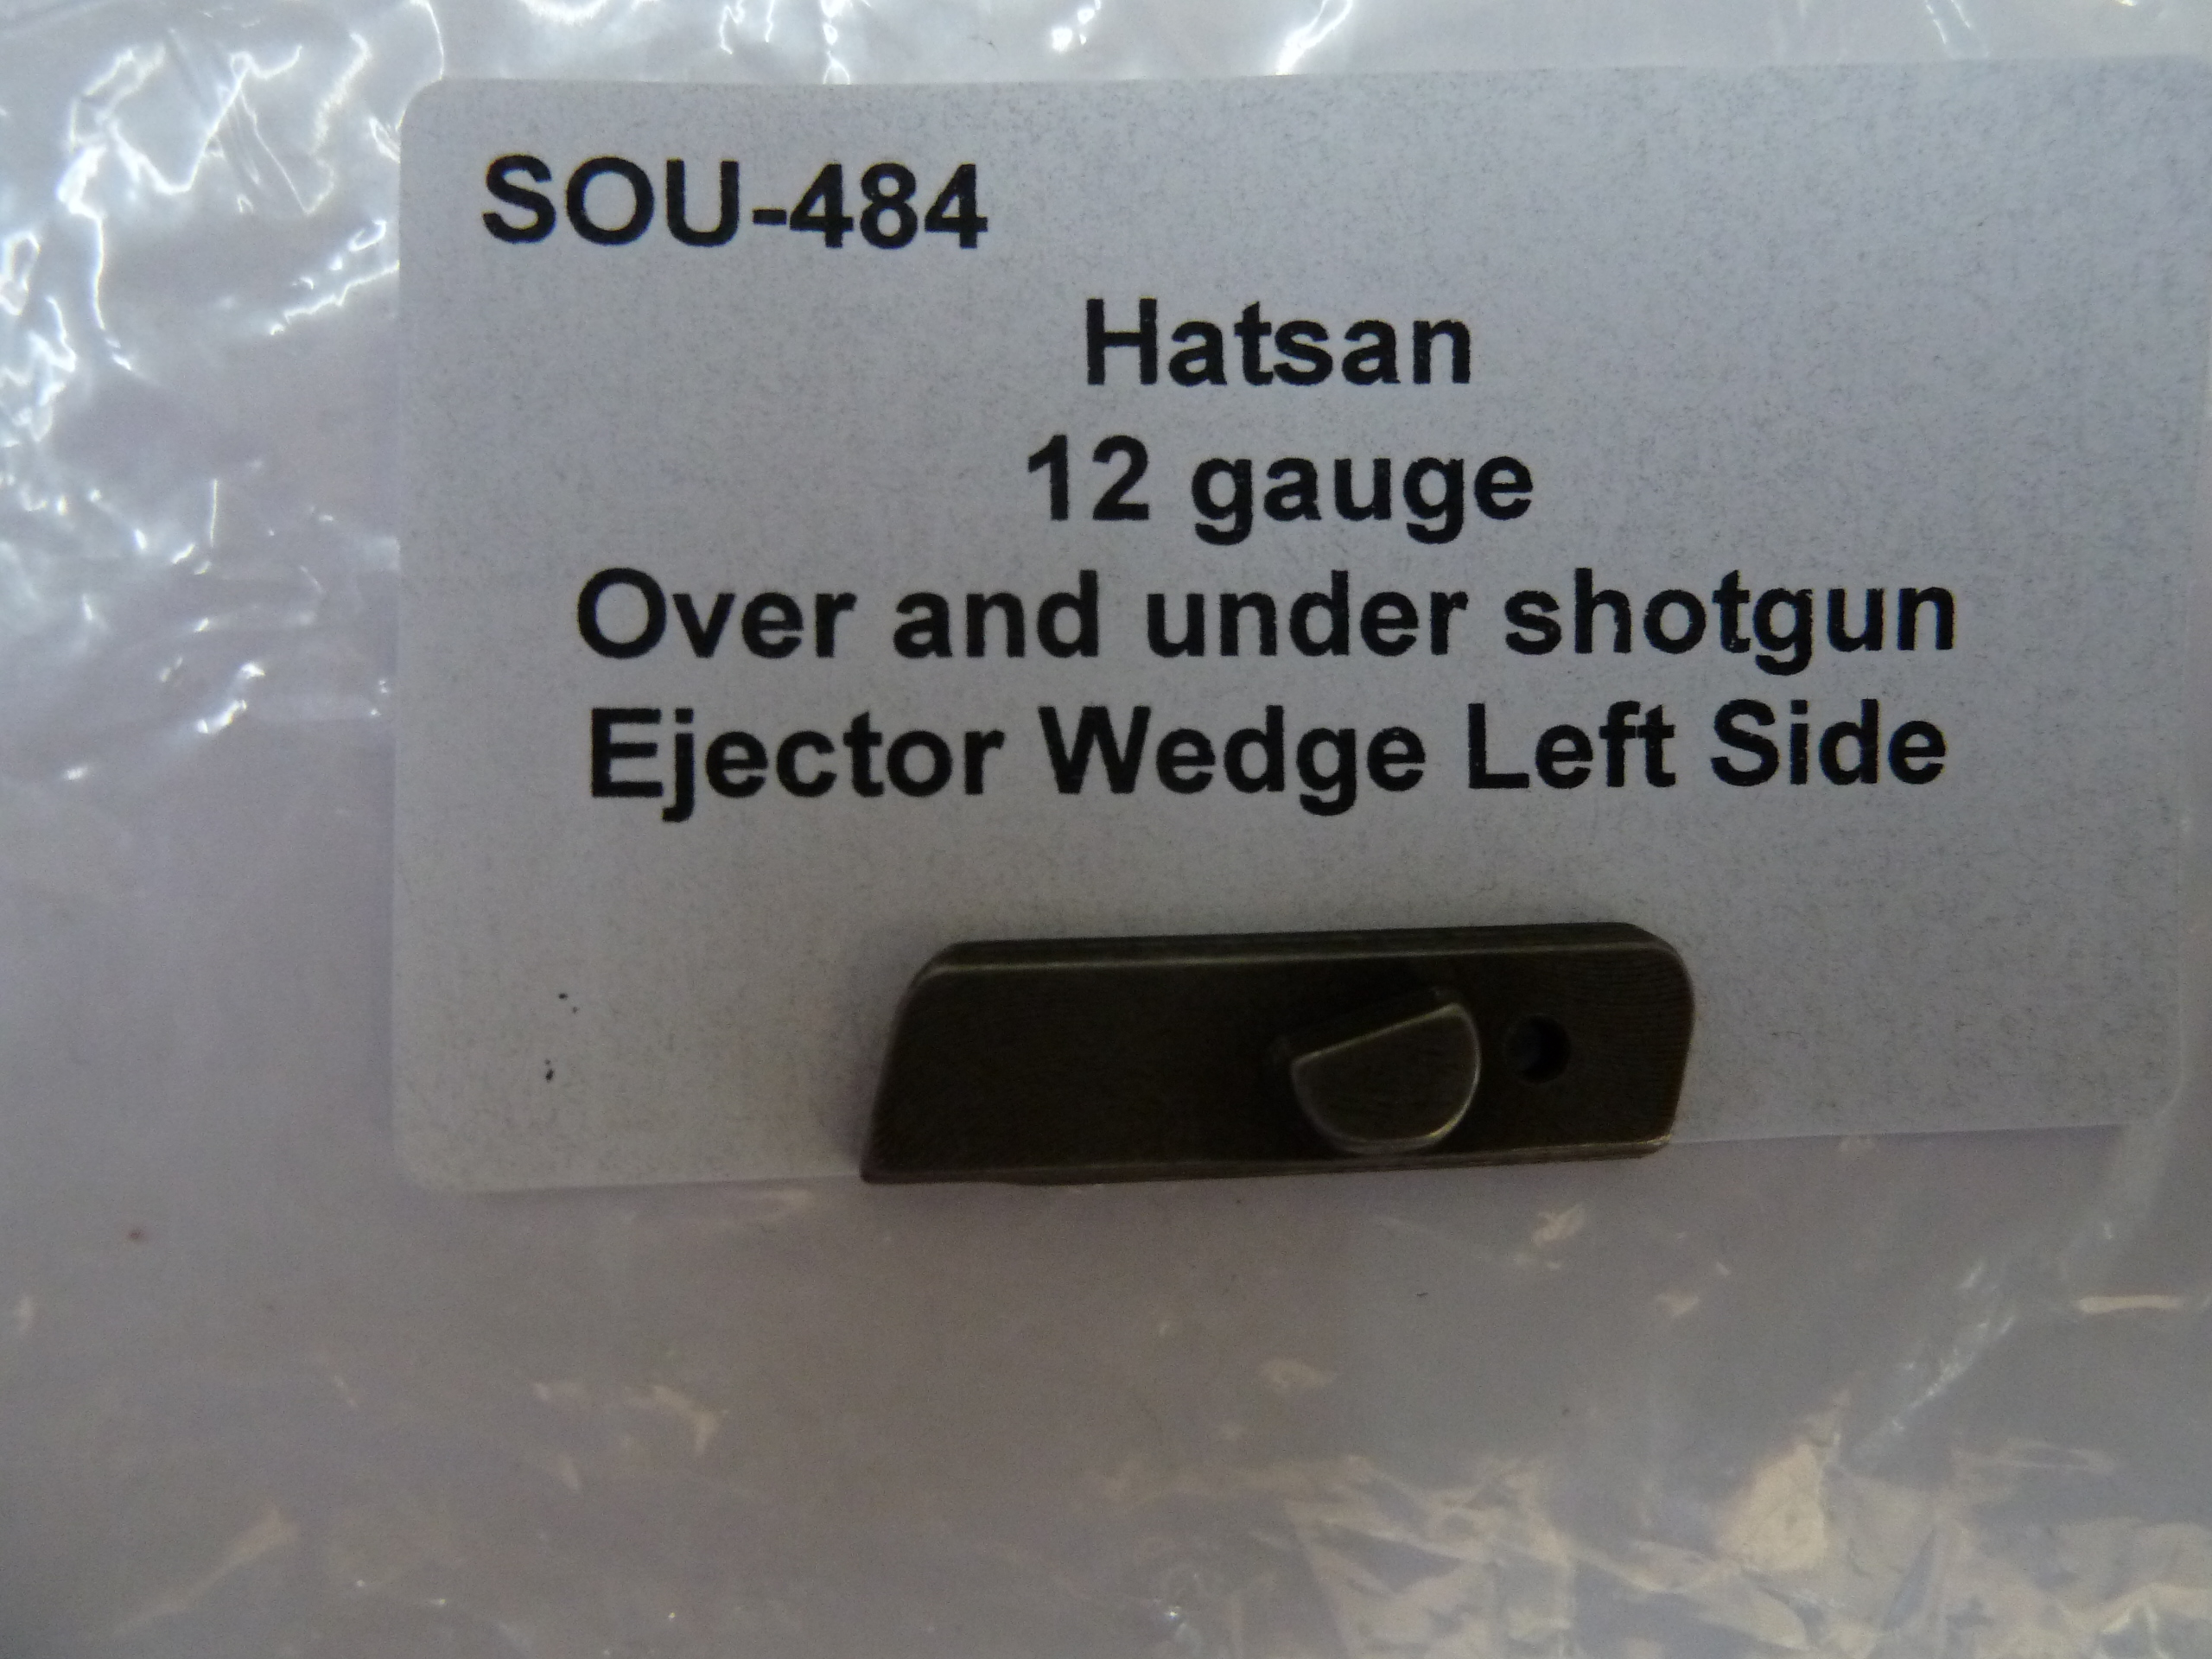 sou-484 Hatsan 12 gauge over and under shotgun ejector wedge left side